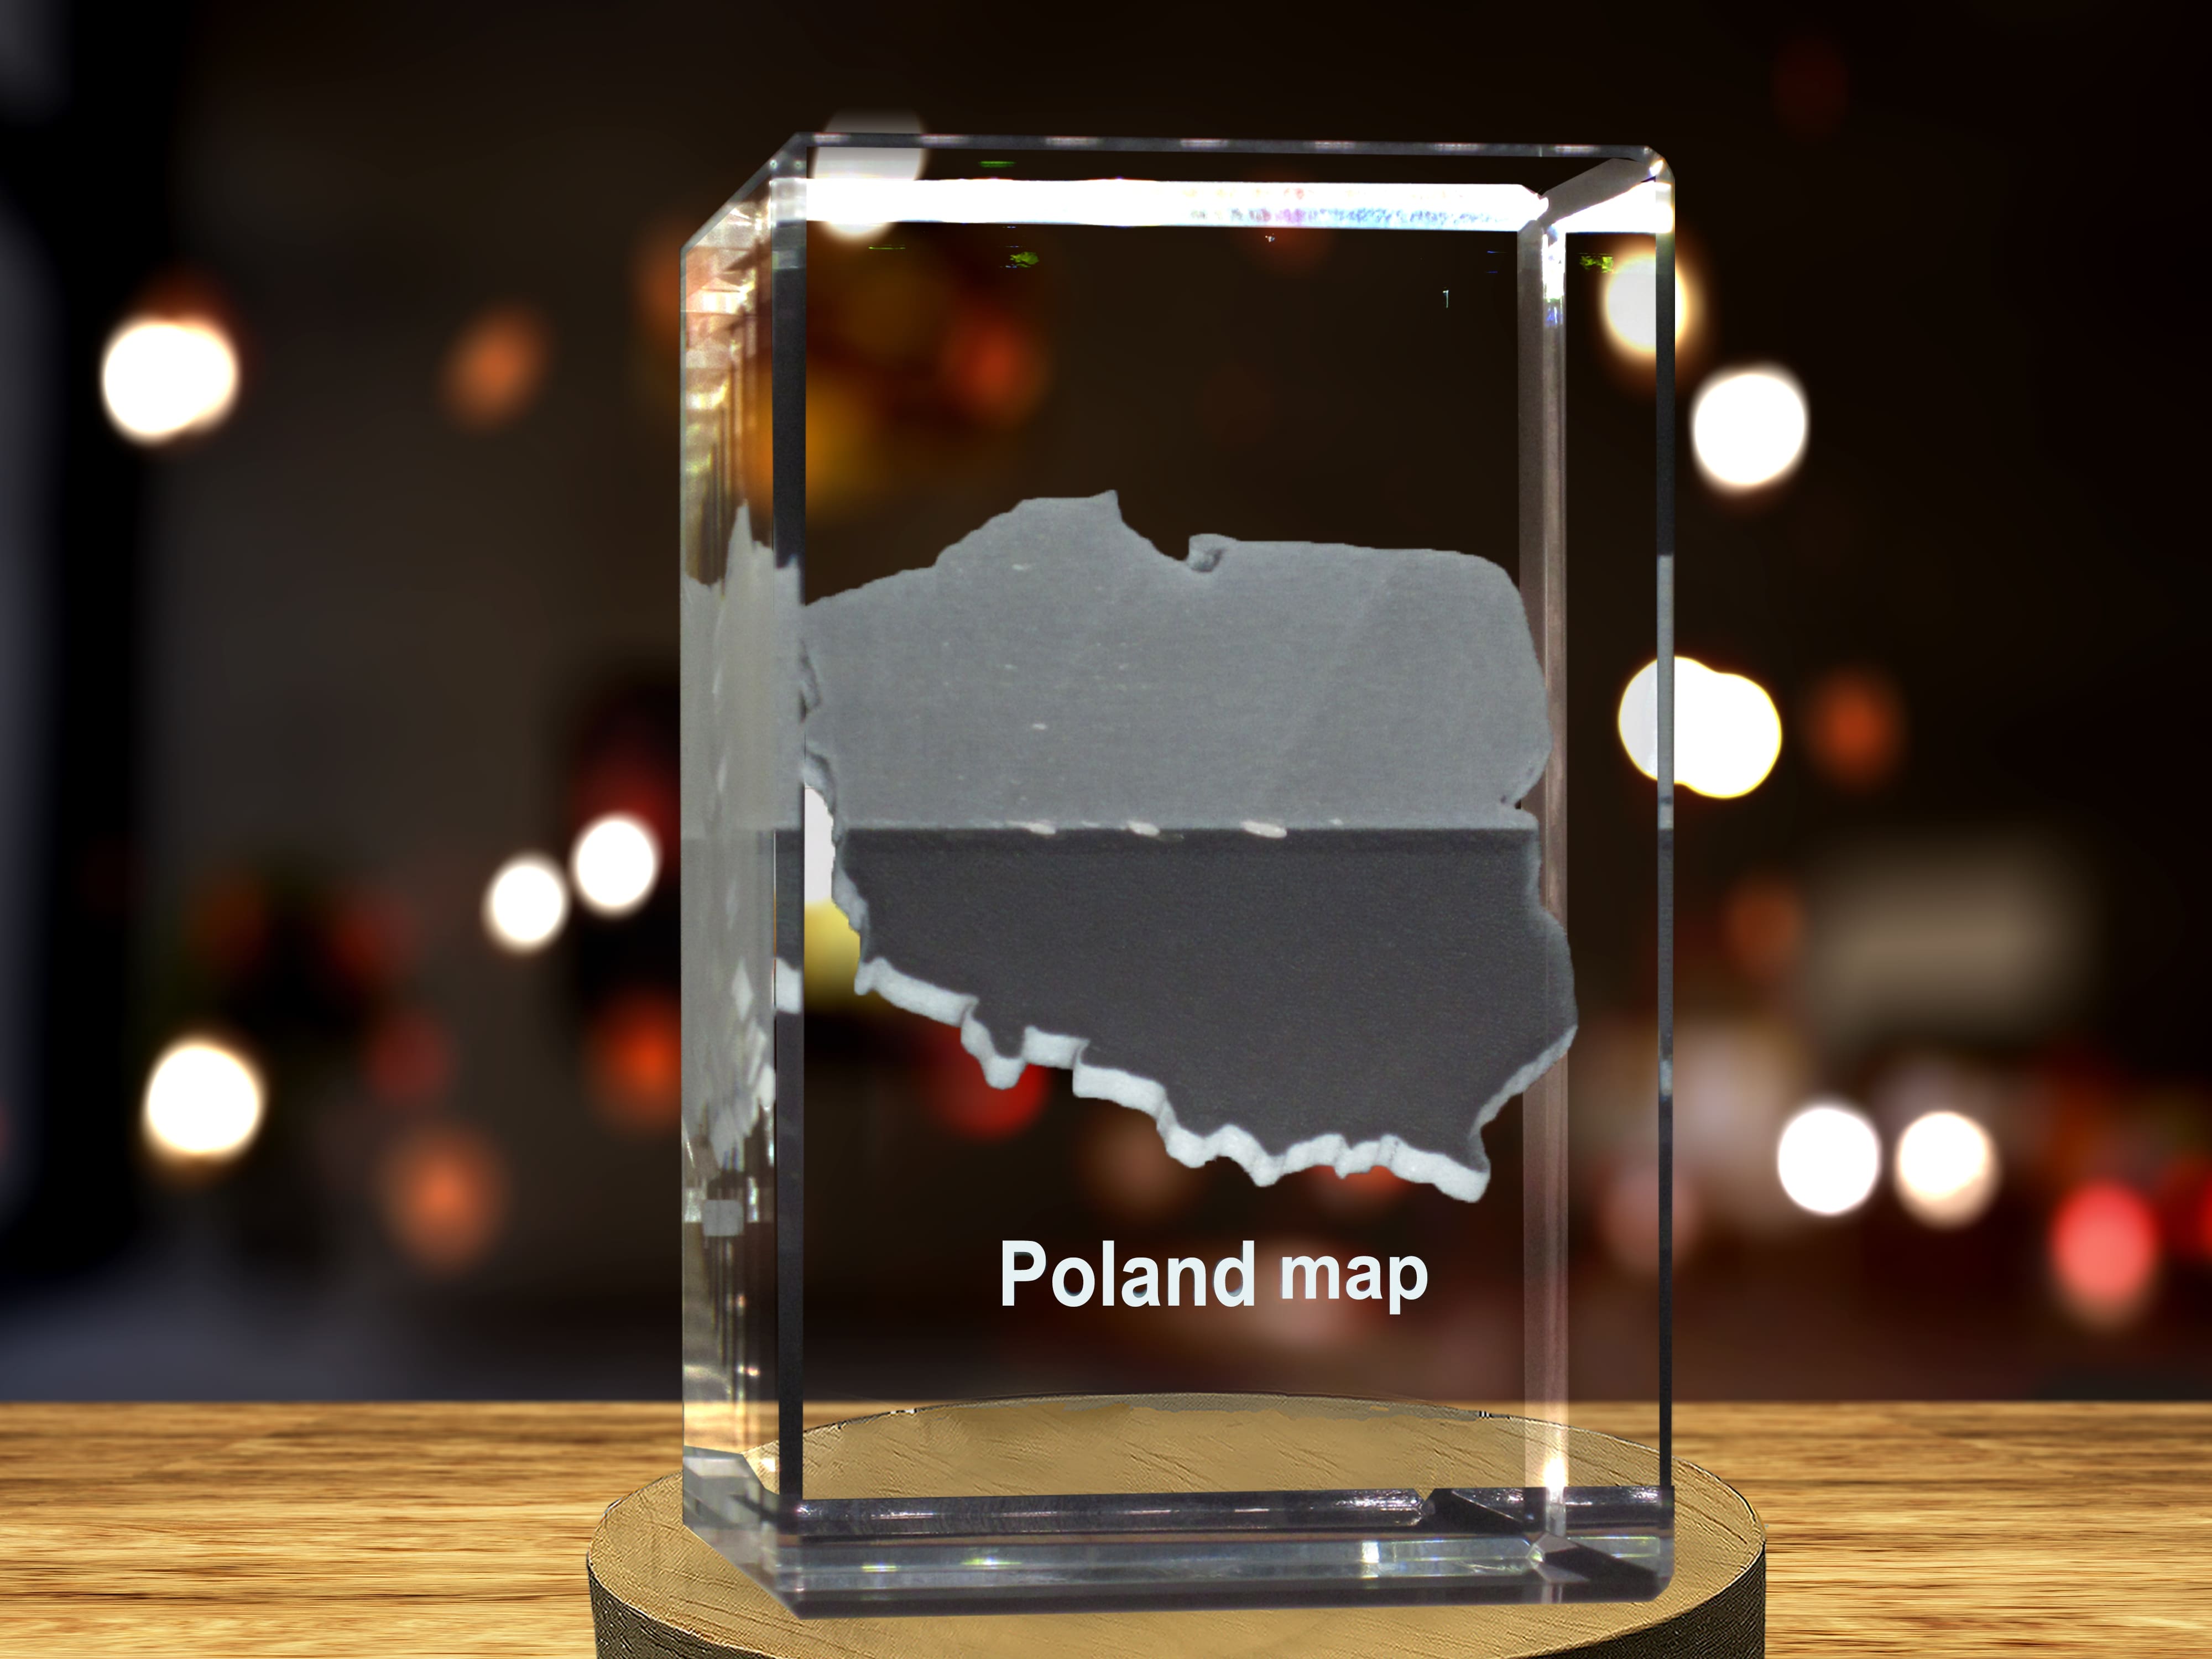 Poland 3D Engraved Crystal 3D Engraved Crystal Keepsake/Gift/Decor/Collectible/Souvenir A&B Crystal Collection